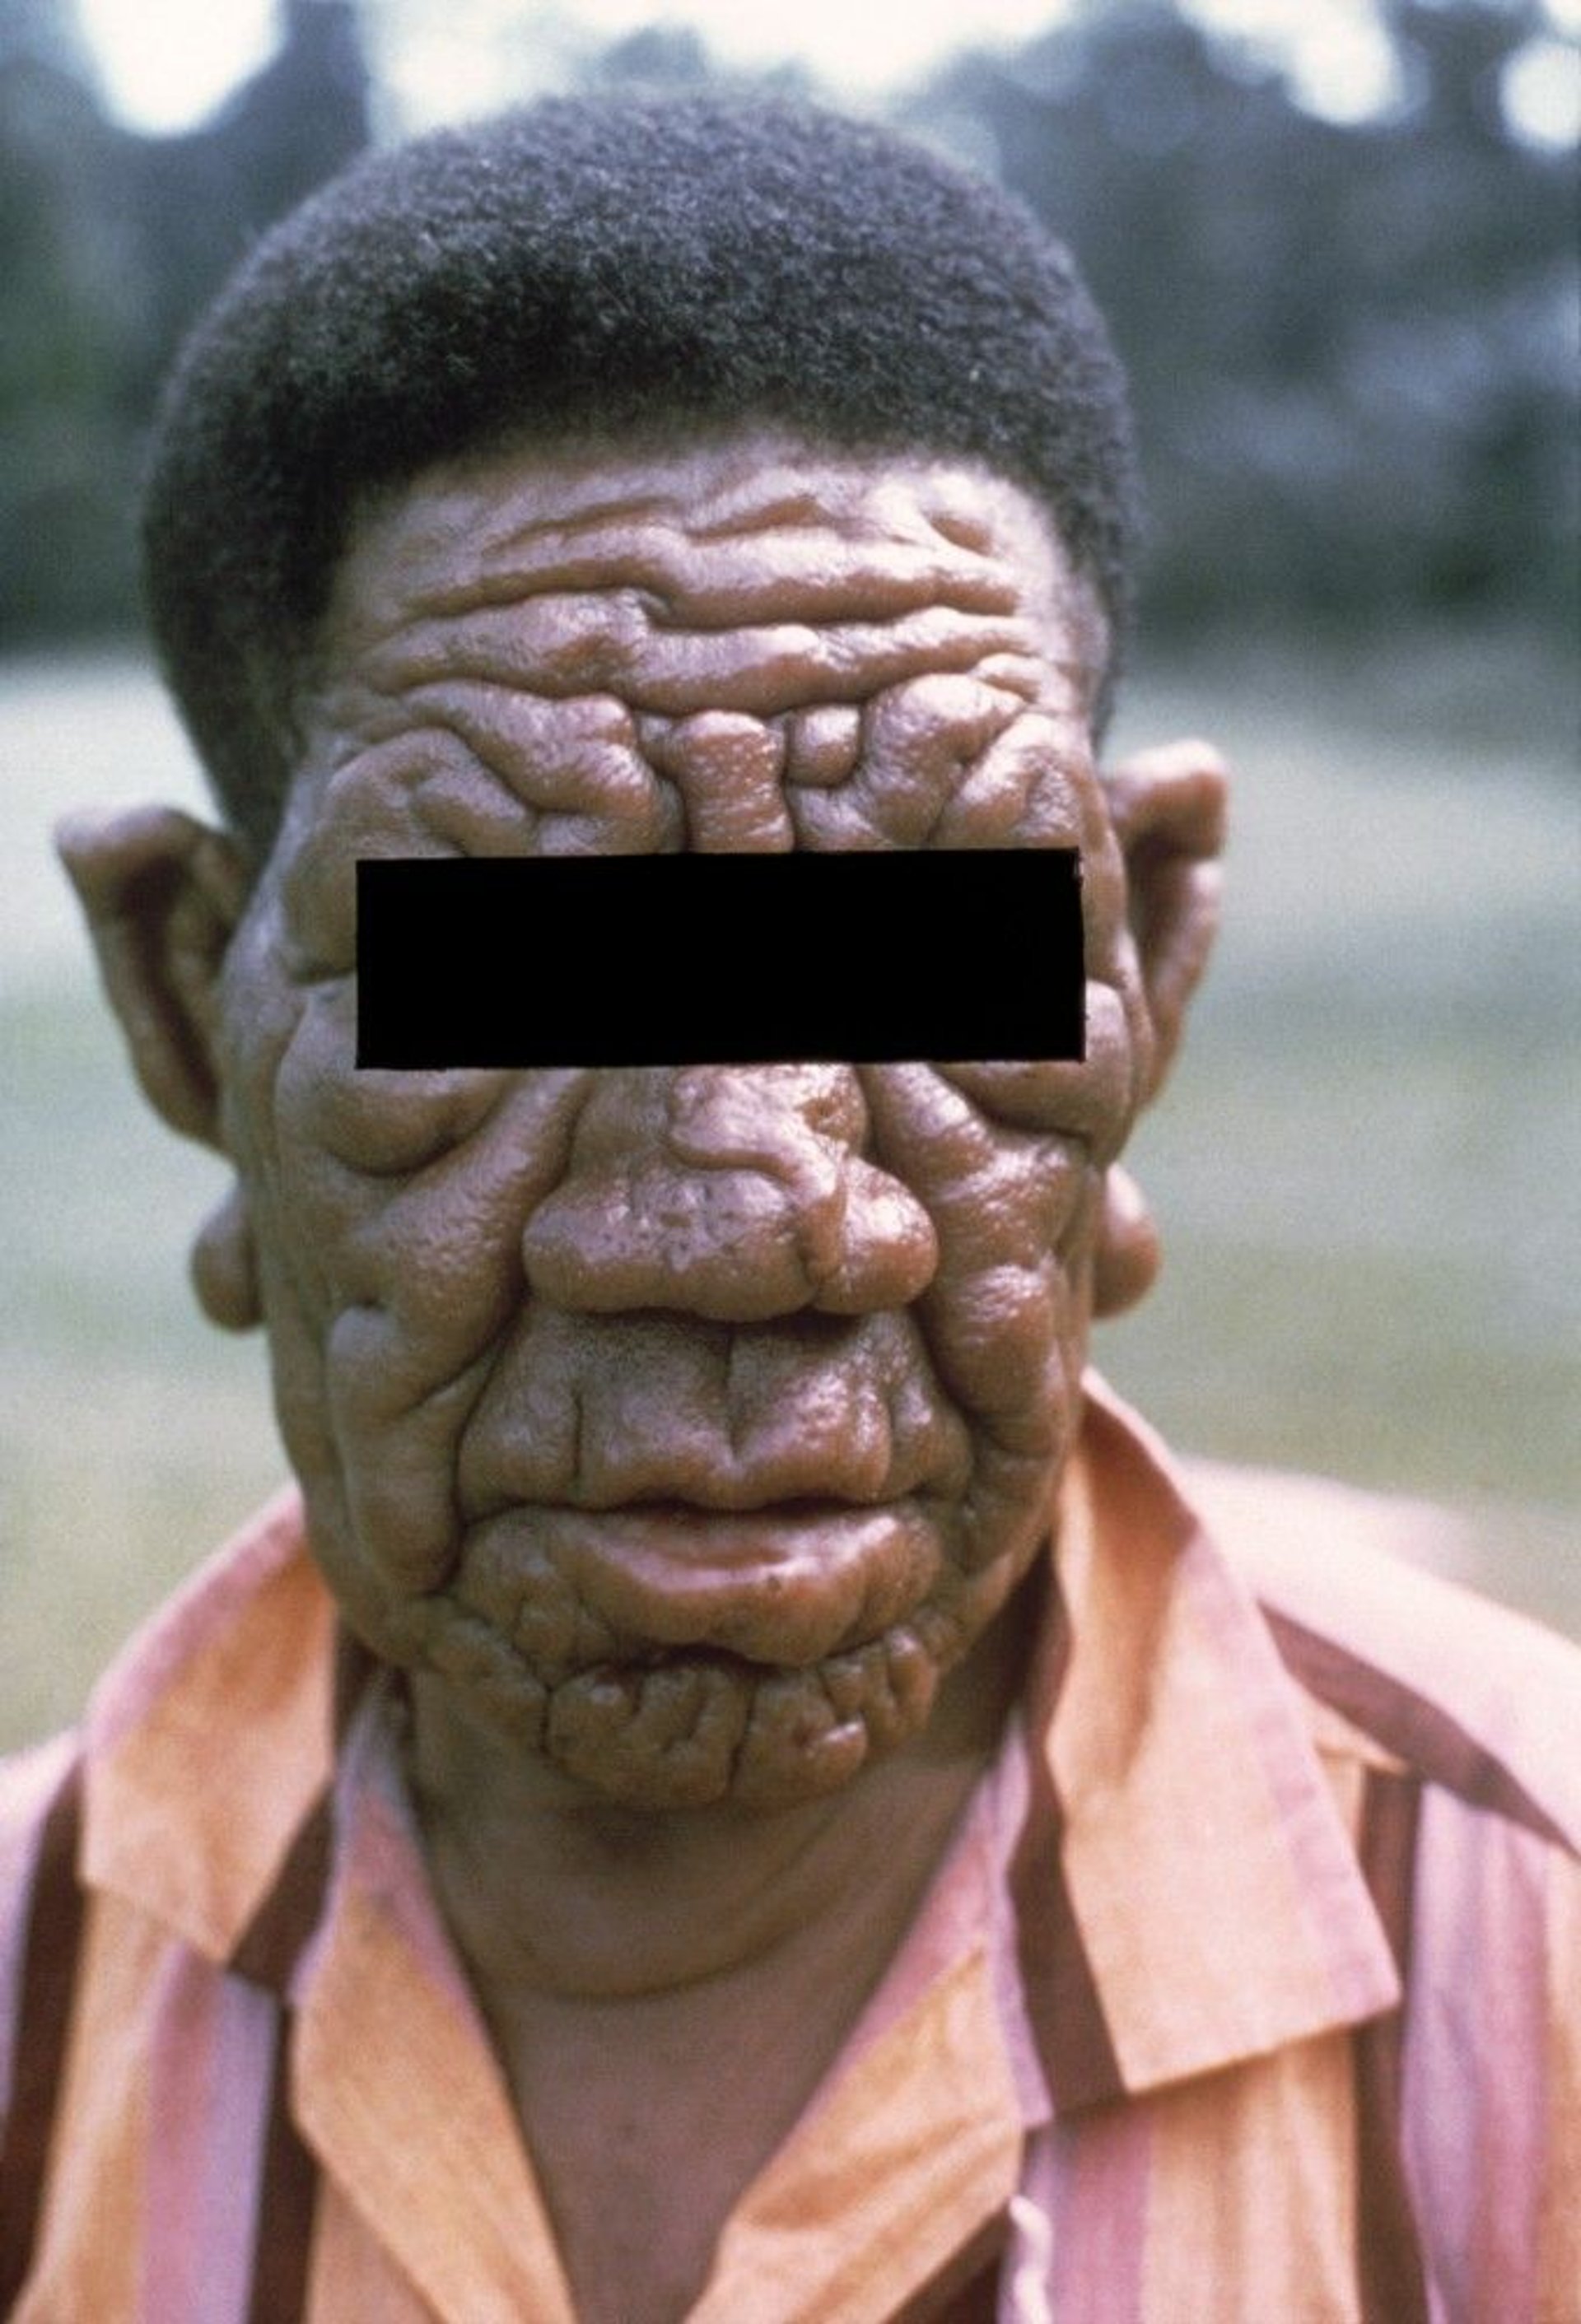 Lepromatous Leprosy